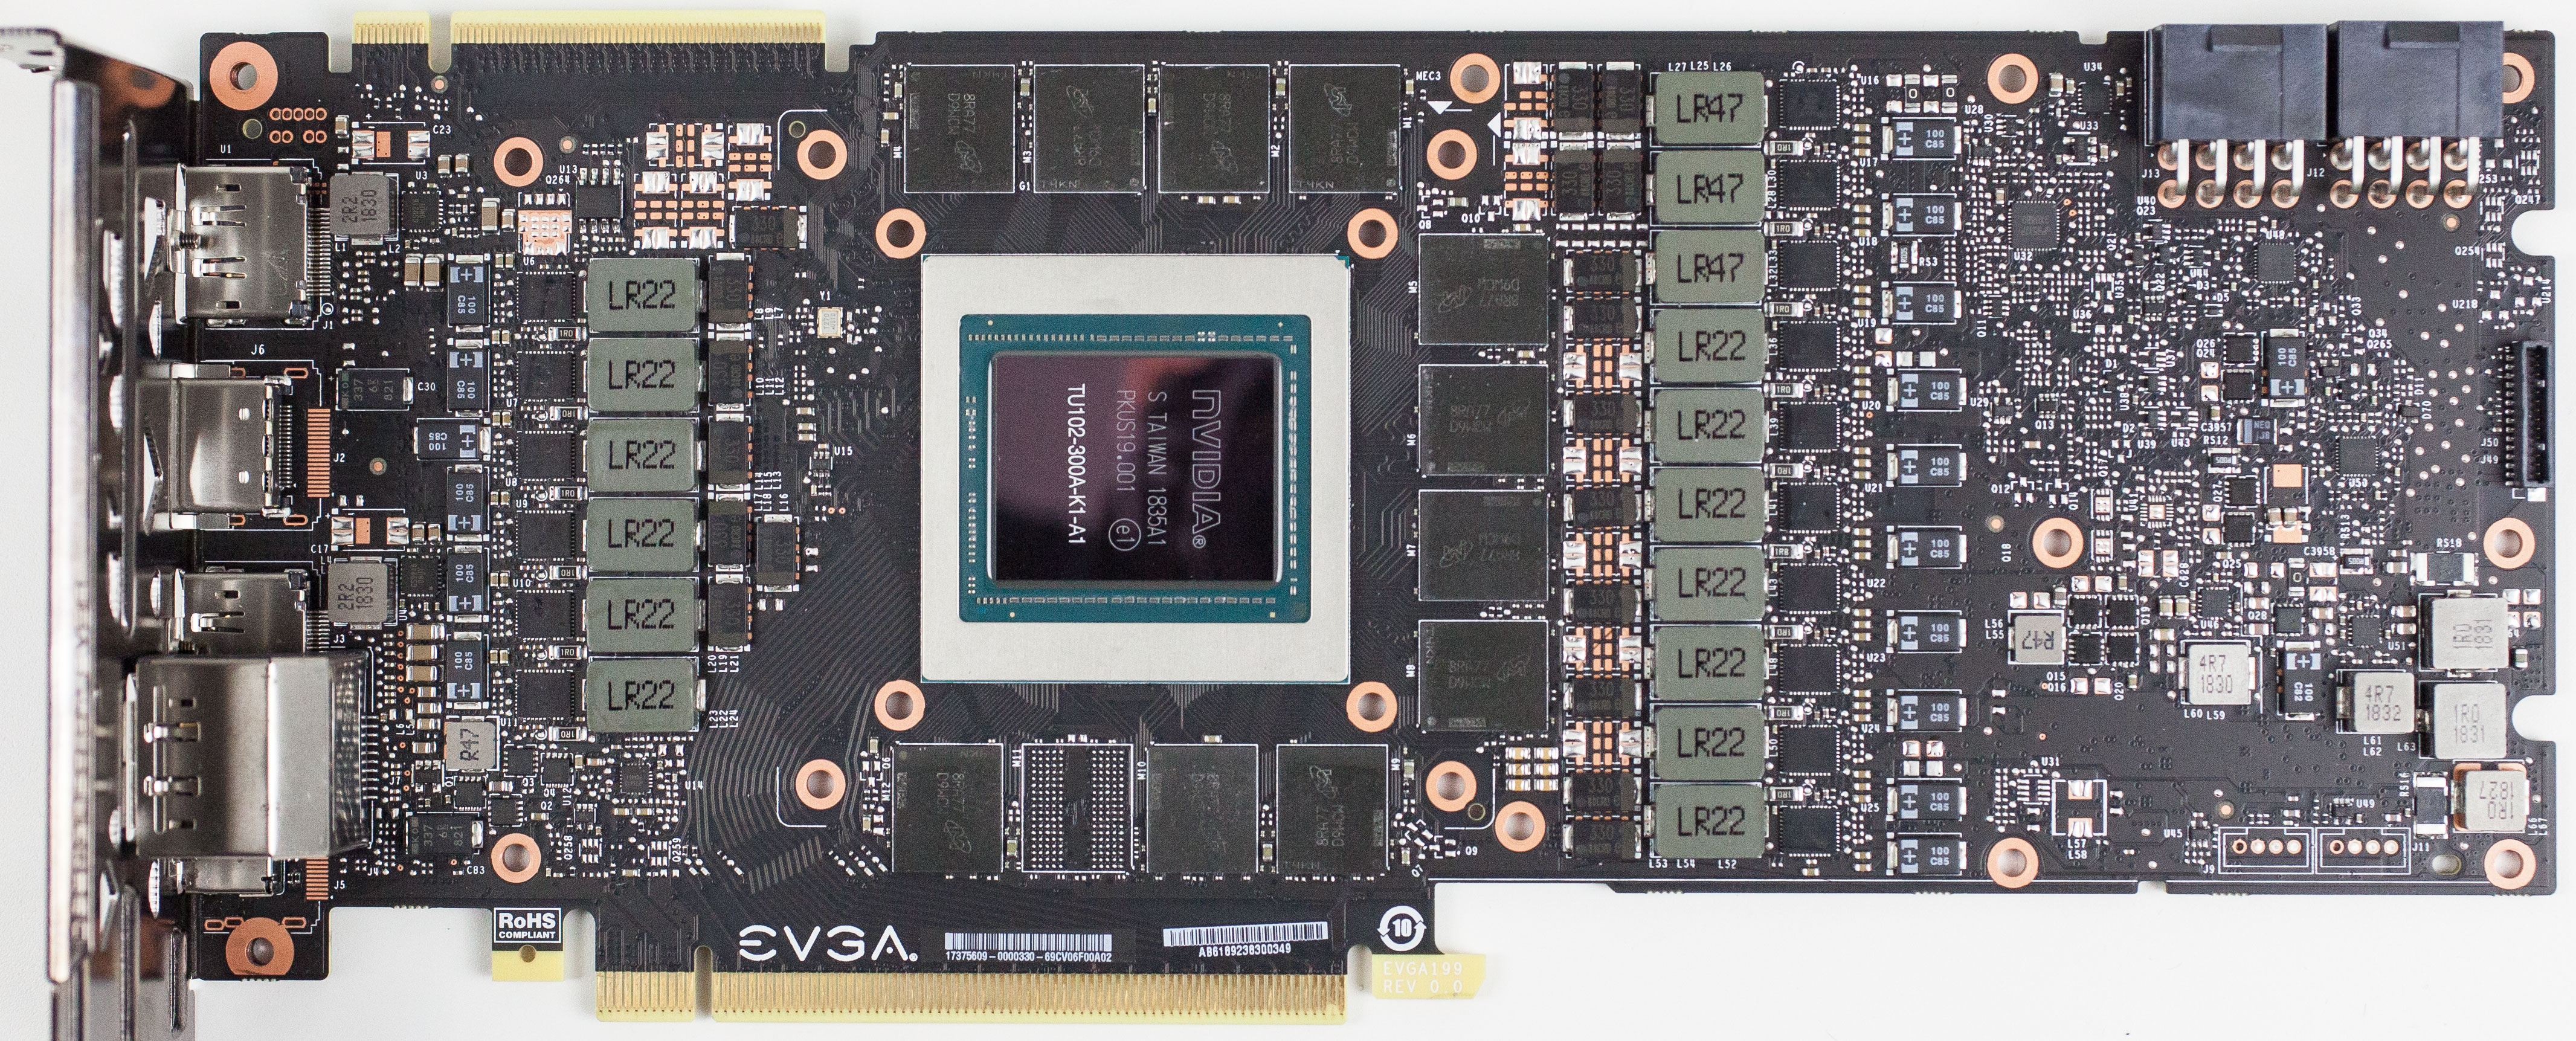 EVGA GeForce RTX 2080 Ti XC Ultra 11 GB Review - Circuit Board